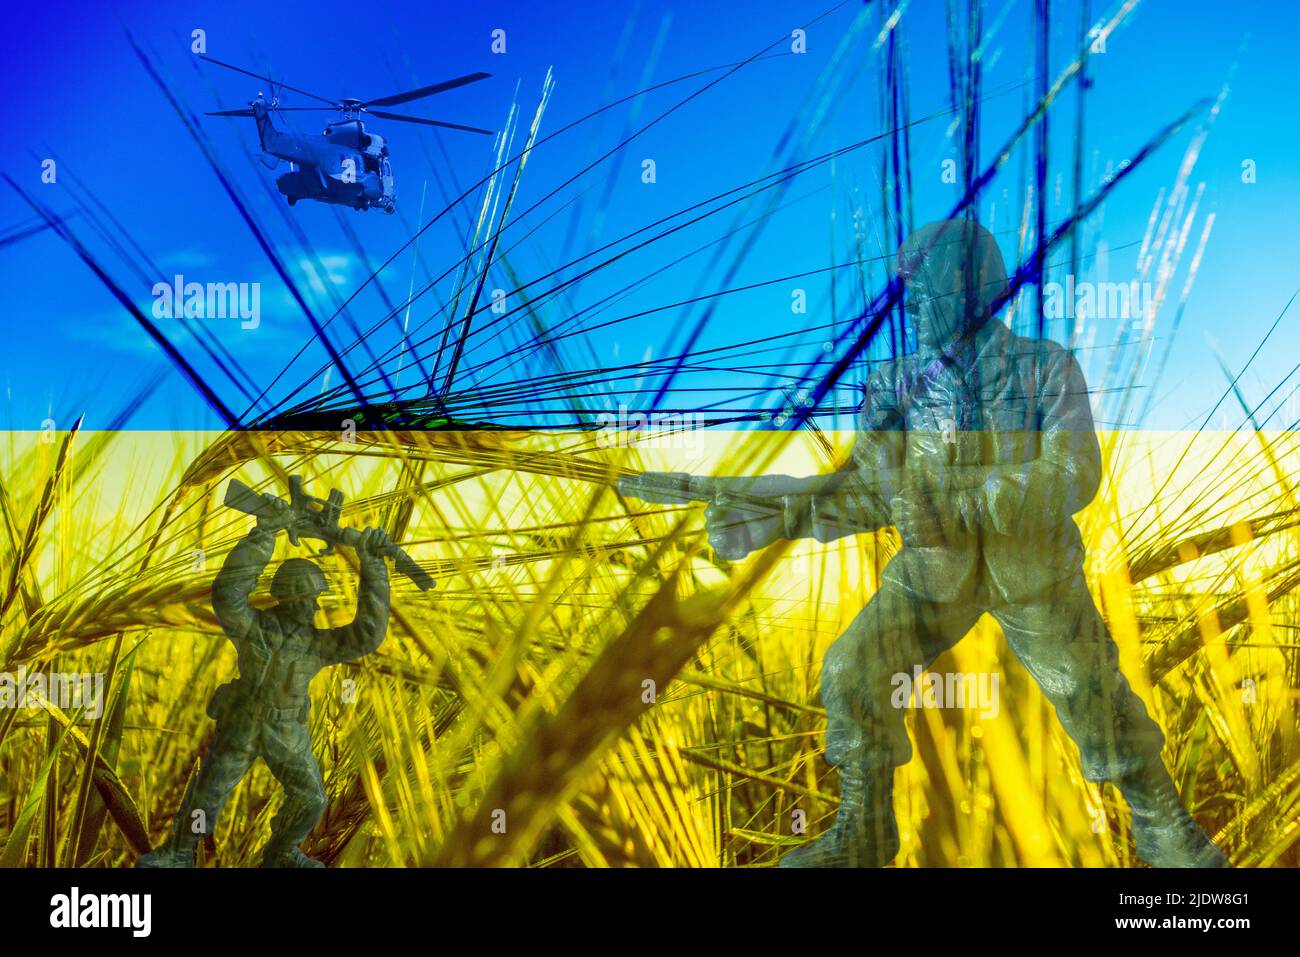 Drapeau de l'Ukraine champ de blé, soldats, composite. Image conceptuelle : Ukraine Russie conflit, guerre, blé, pénurie alimentaire mondiale, sanctions russes... Banque D'Images